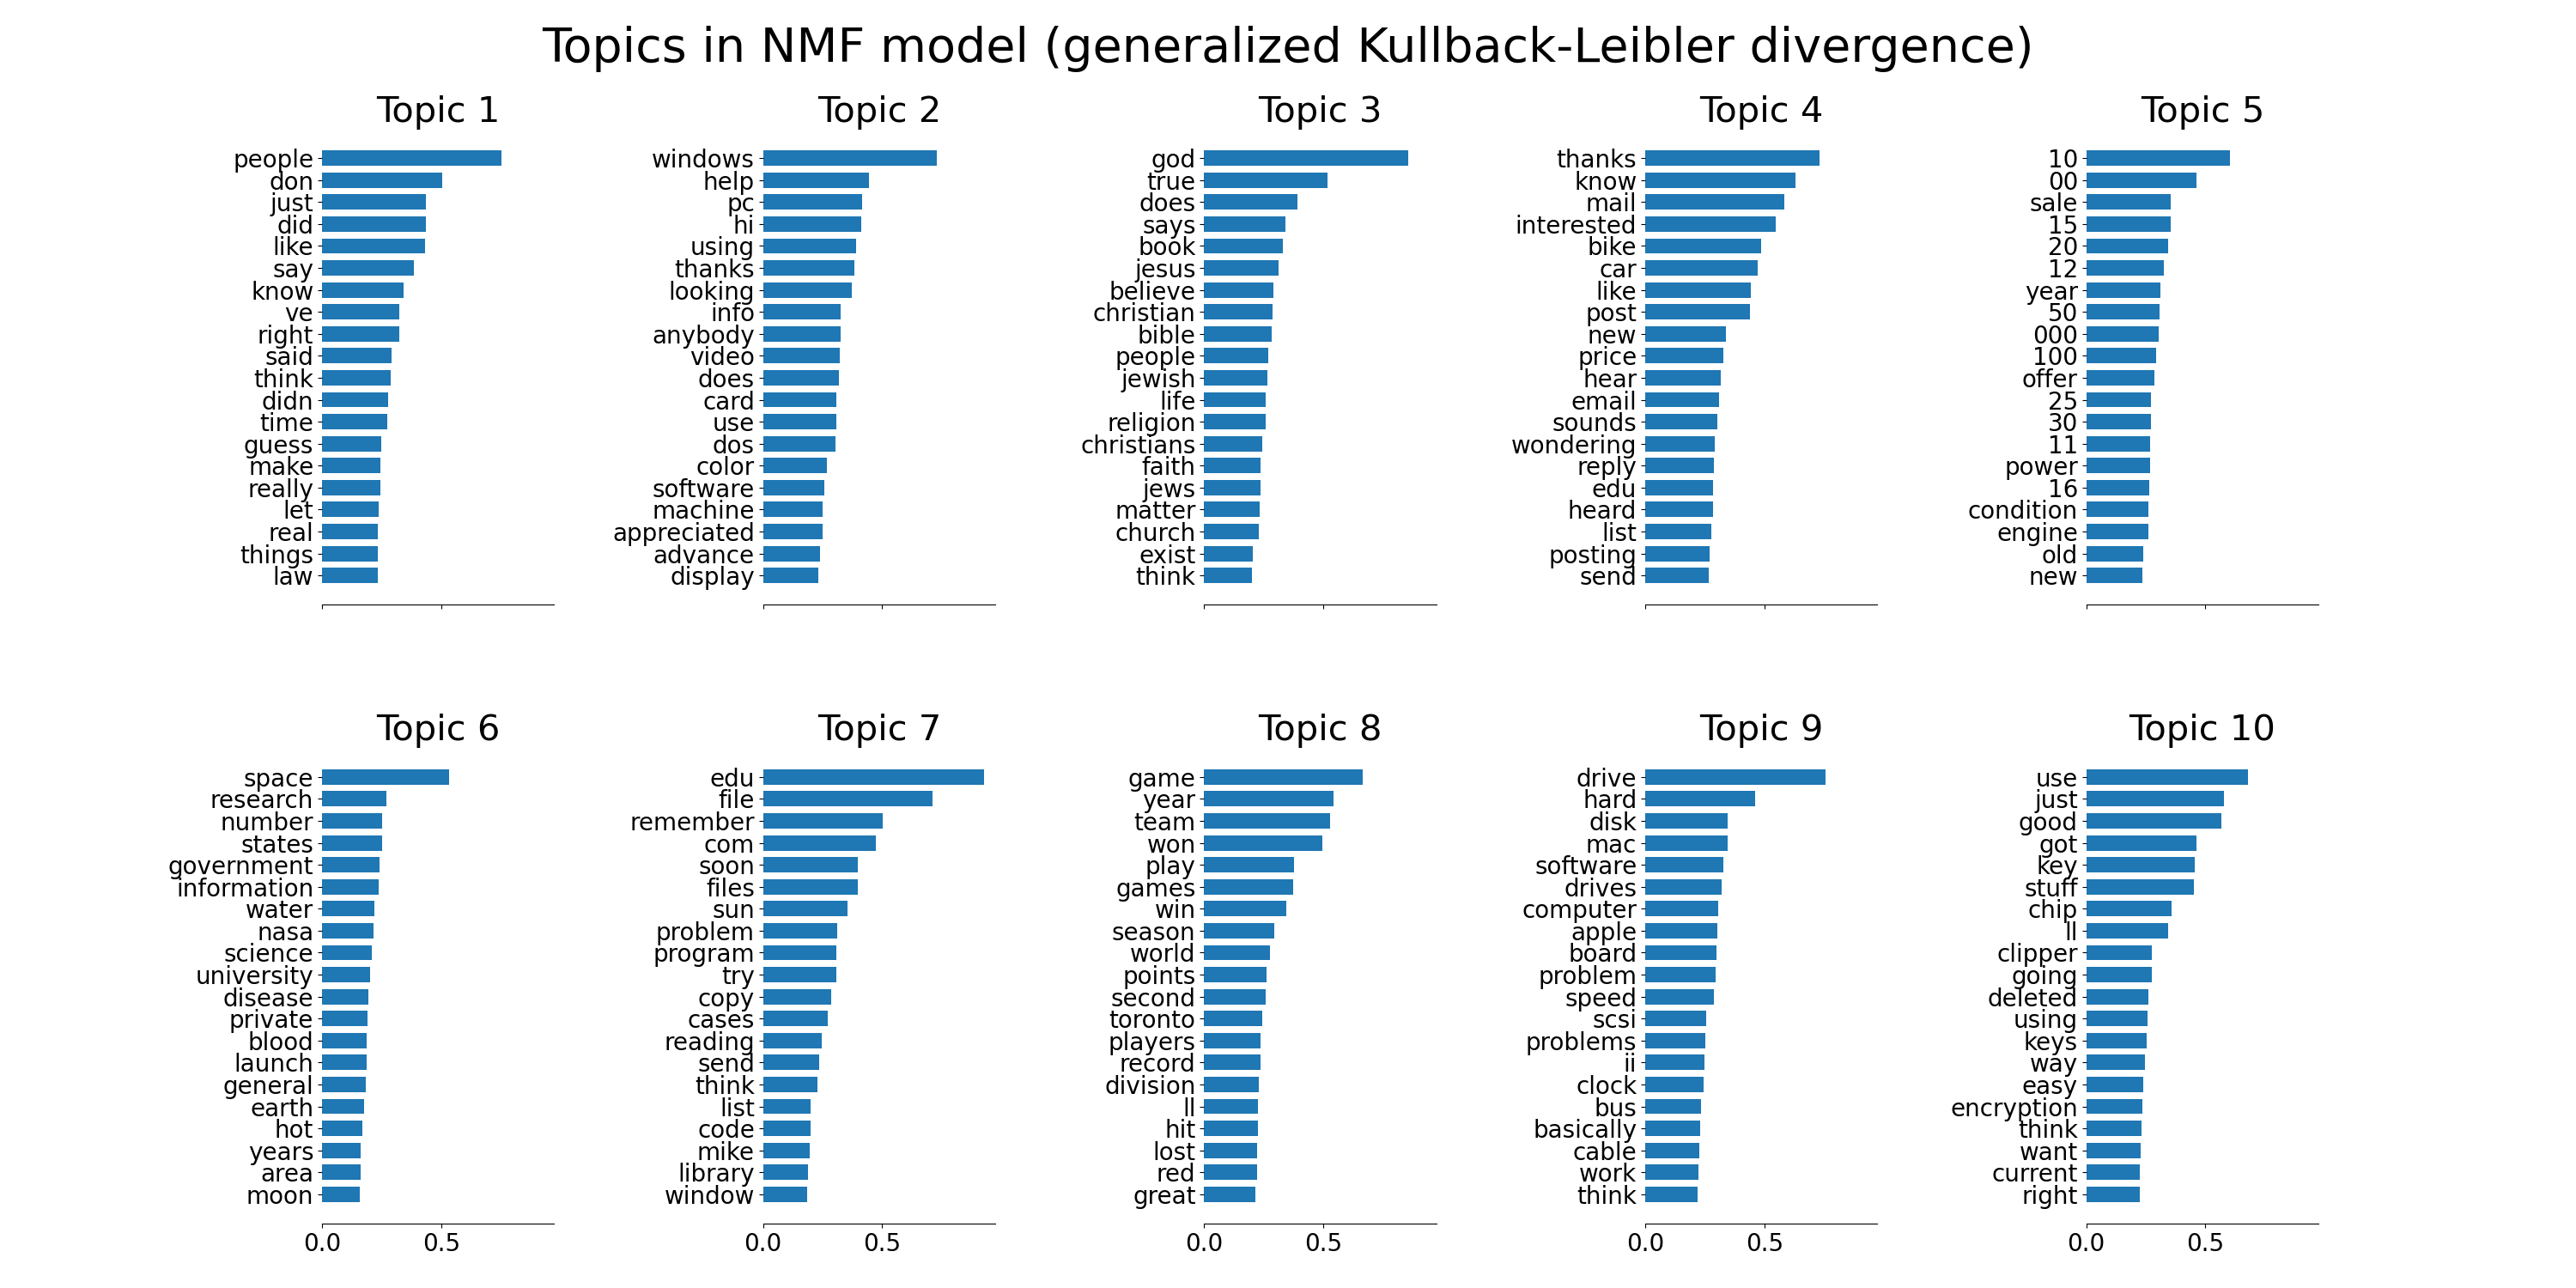 Topics in NMF model (generalized Kullback-Leibler divergence), Topic 1, Topic 2, Topic 3, Topic 4, Topic 5, Topic 6, Topic 7, Topic 8, Topic 9, Topic 10